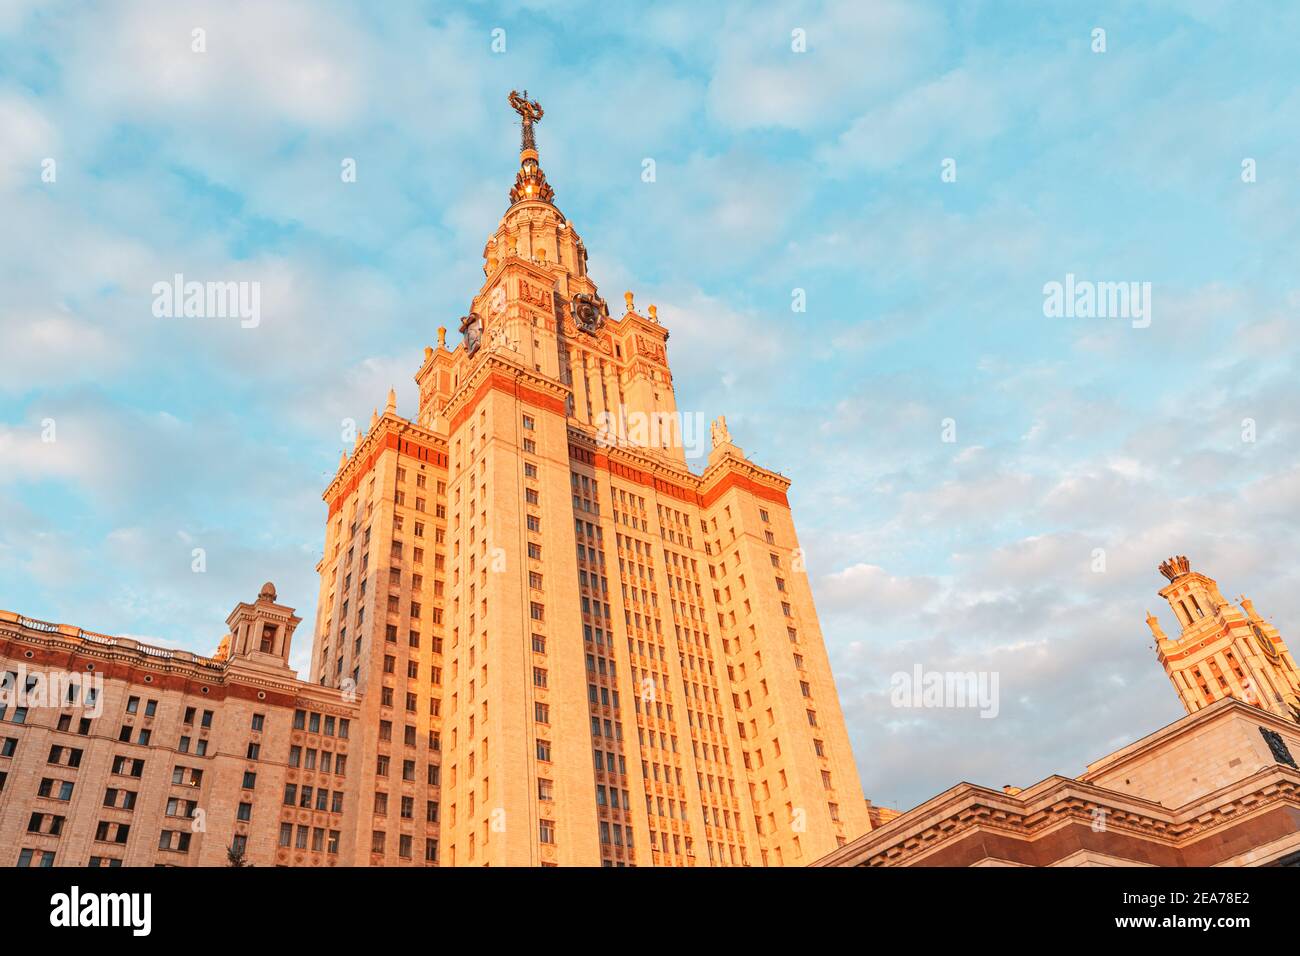 El campus principal de la Universidad Estatal Lomonosov de Moscú. Edificio majestuoso en el estilo arquitectónico del Imperio estalinista Foto de stock